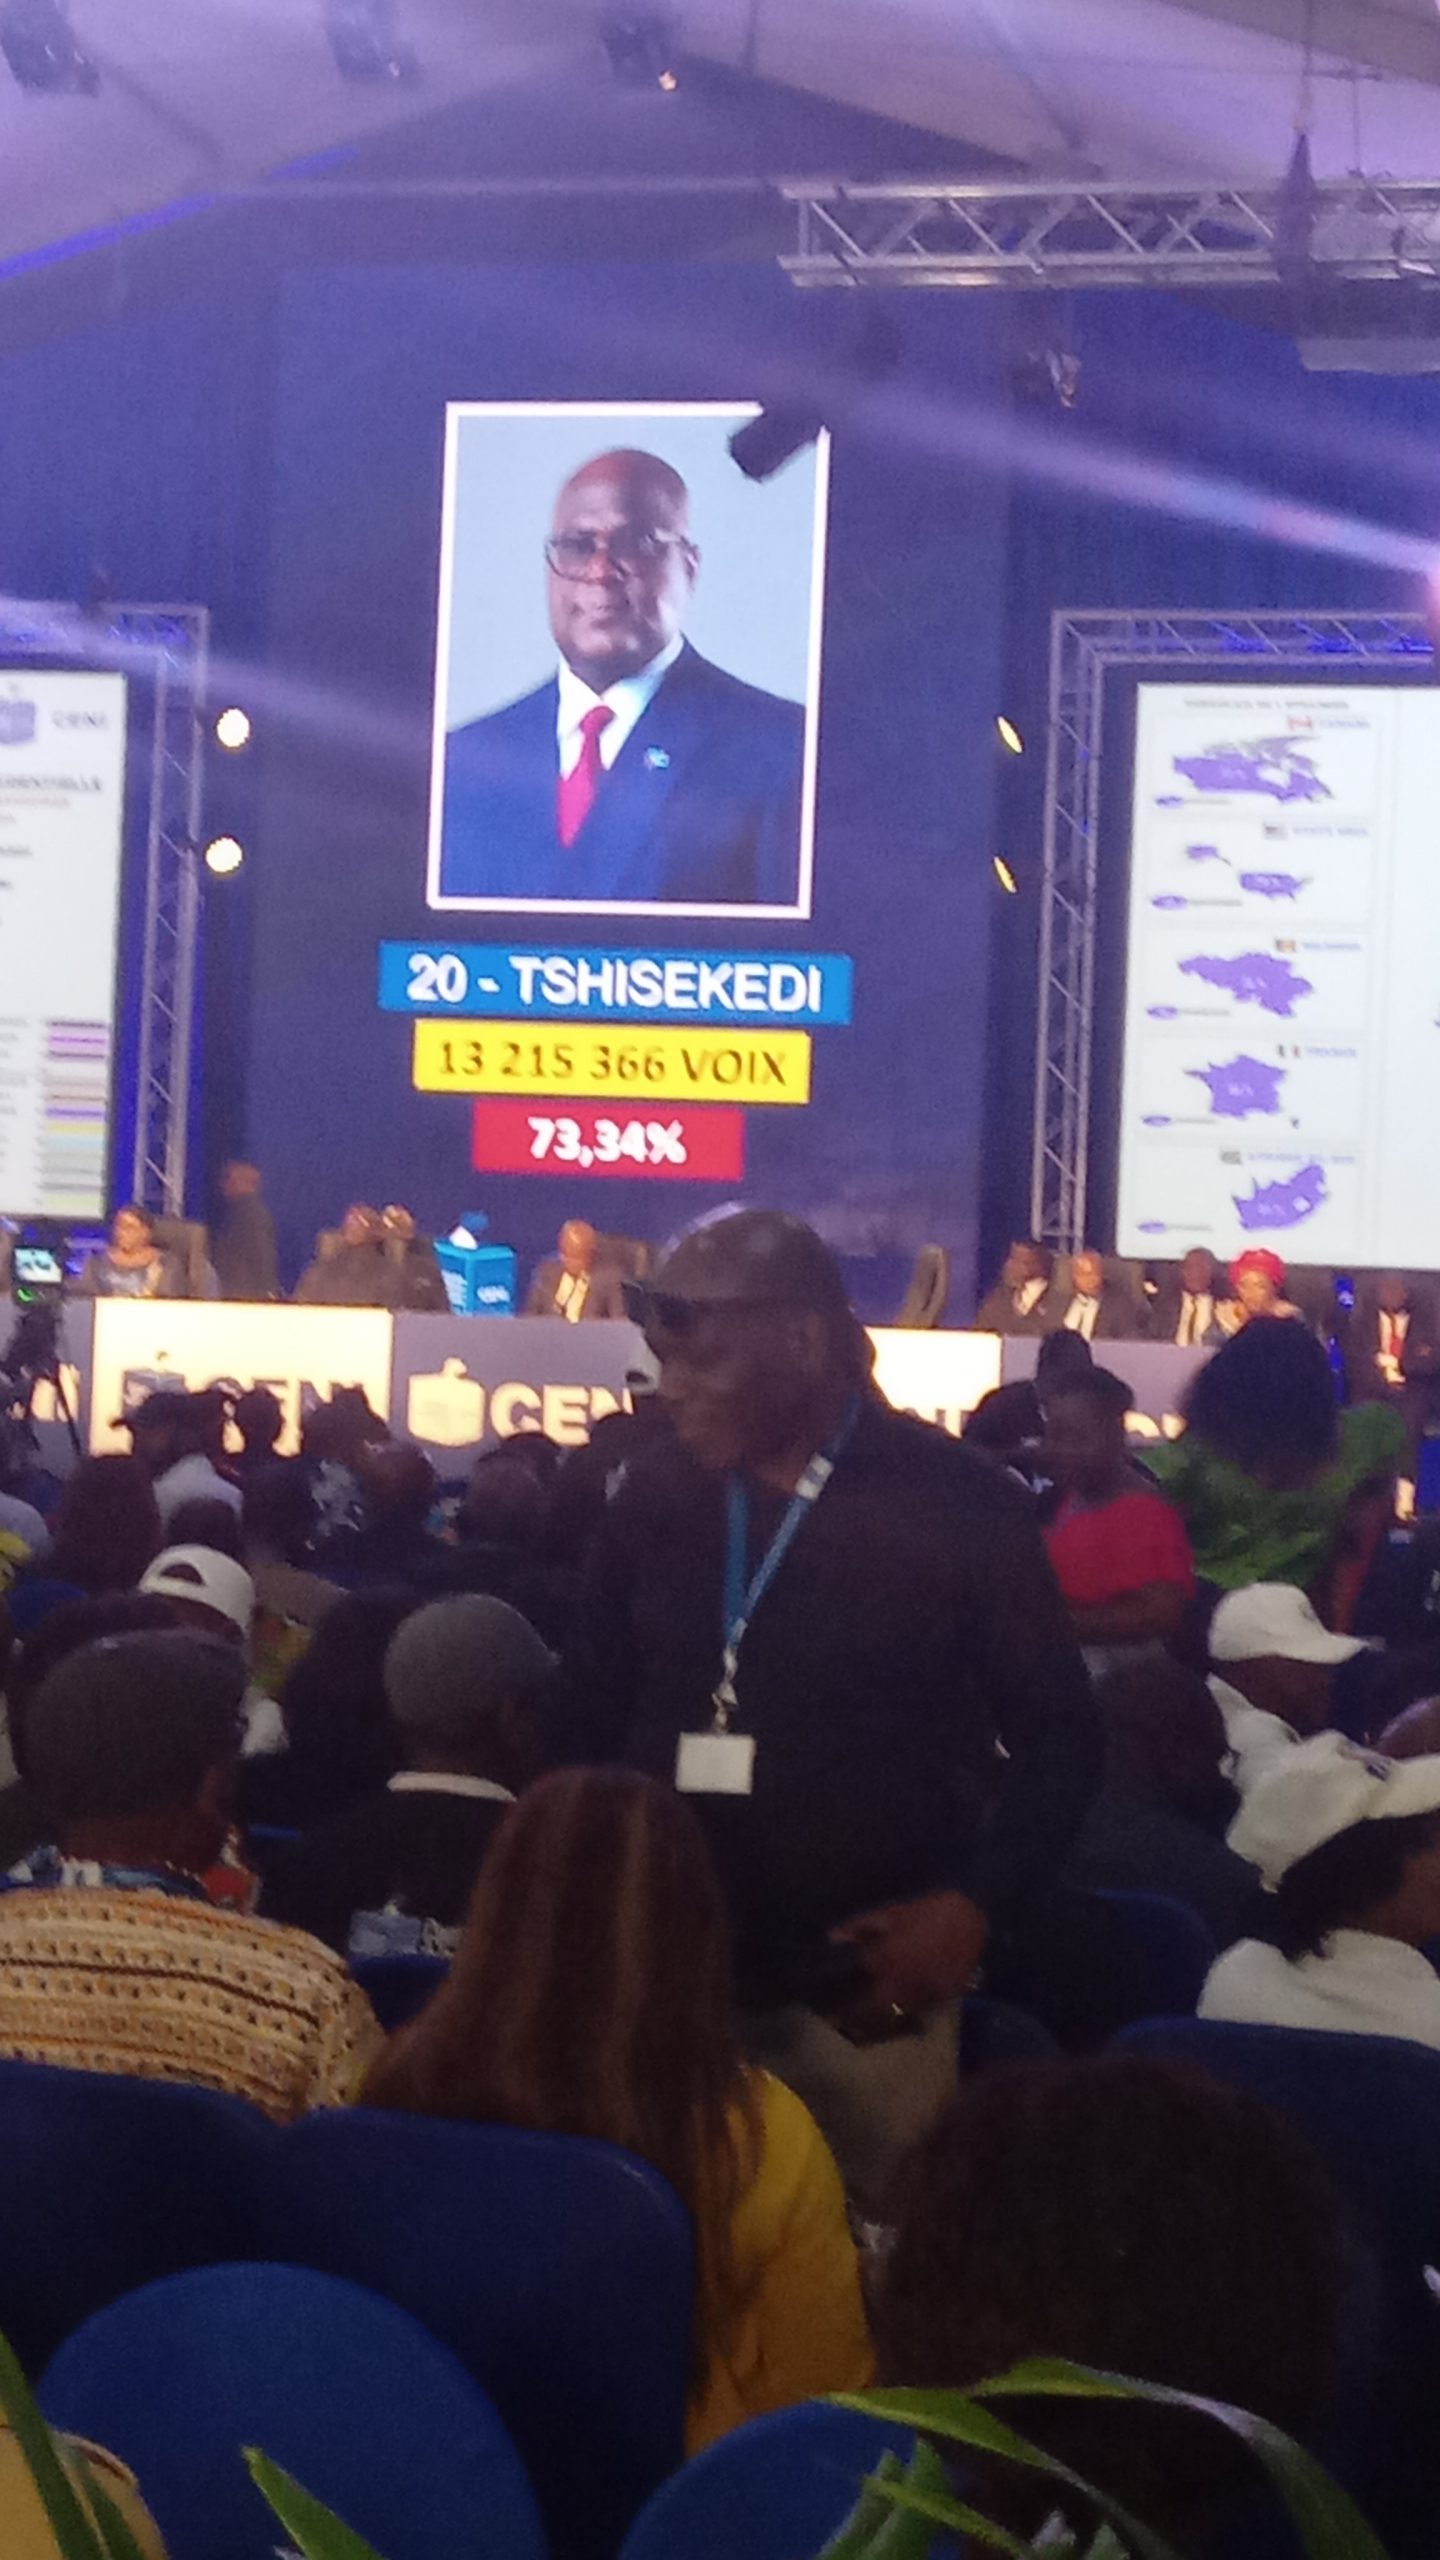 Félix Tshisekedi réélu avec 73.34%!